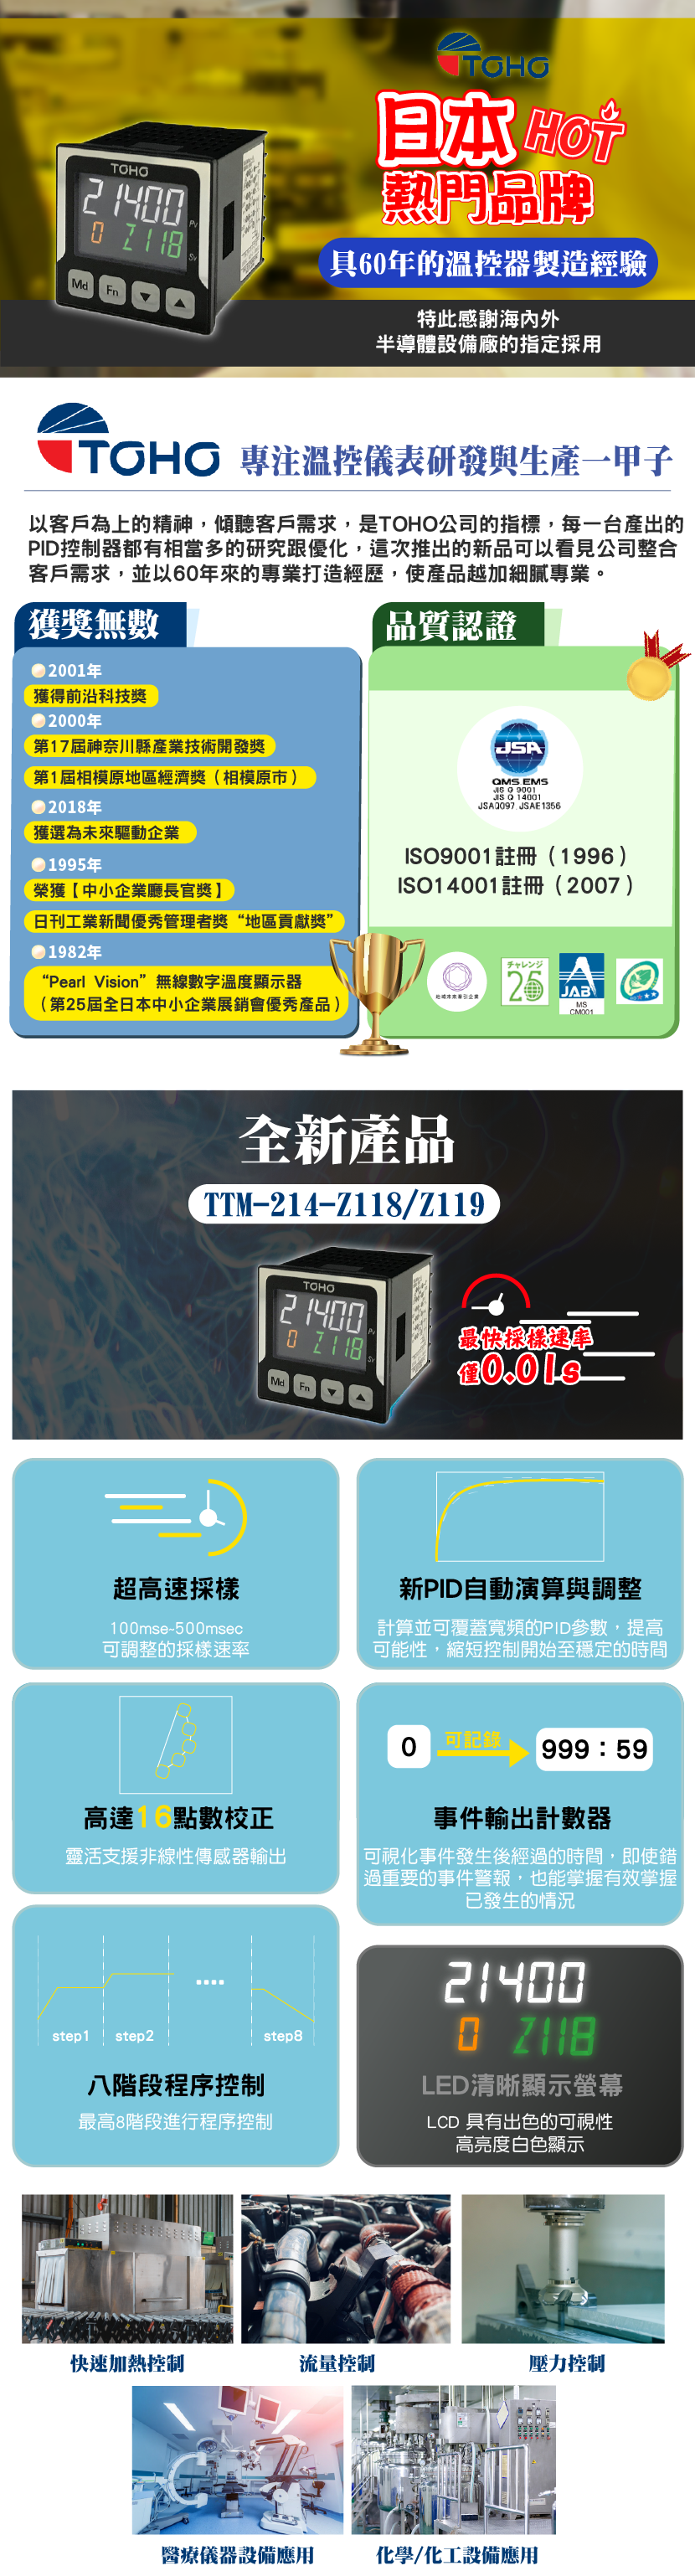 TTM-214-Z118 日本熱門溫控器老牌 超高速採樣 新PID自動演算與調整 高達16點數校正 事件輸出計數器 八階段程序控制 LED清晰顯示